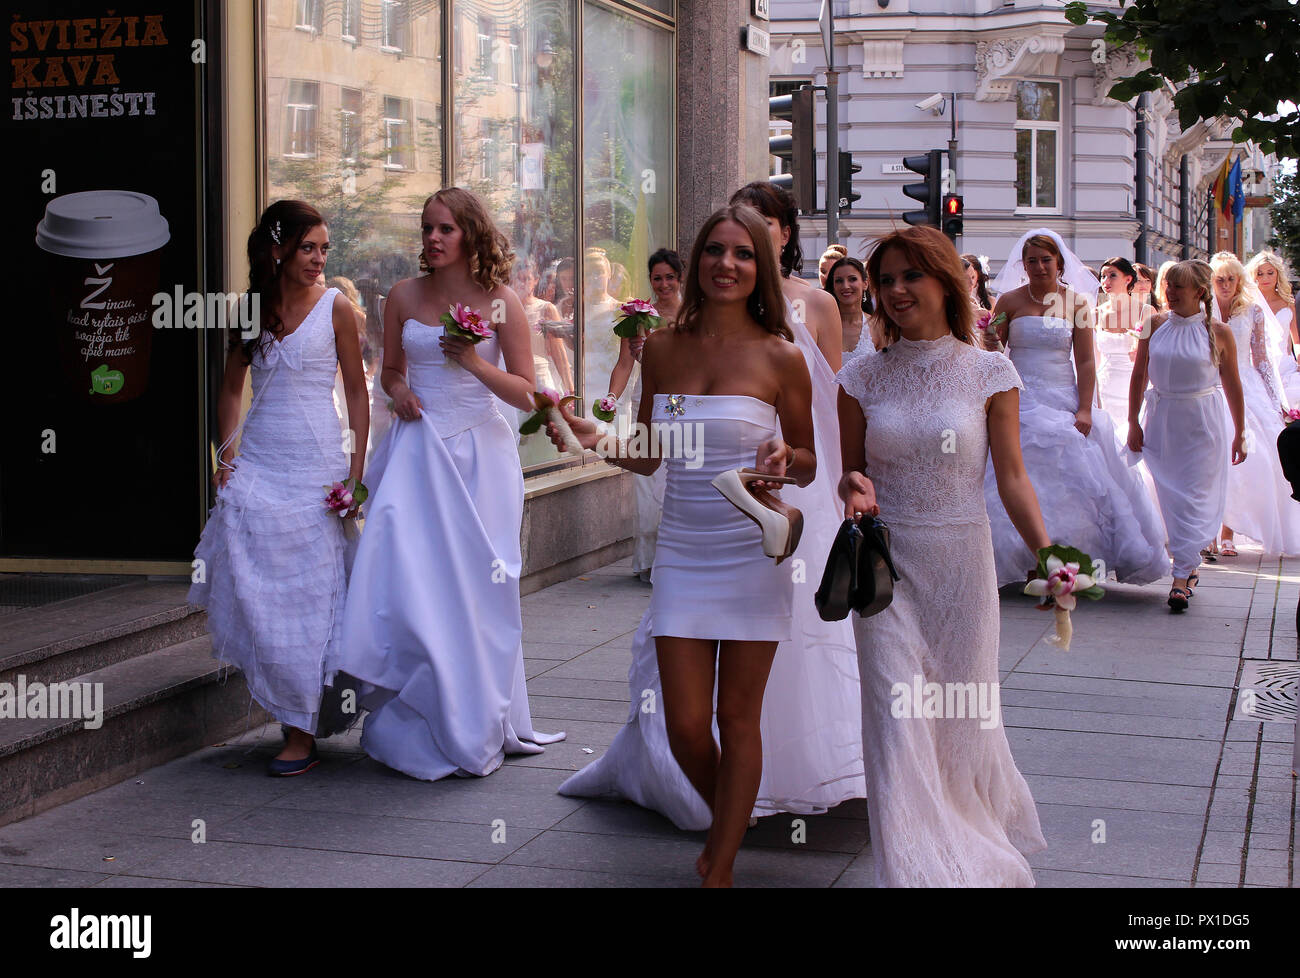 Brautmode Parade in den Straßen von Vilnius, Litauen Stockfoto